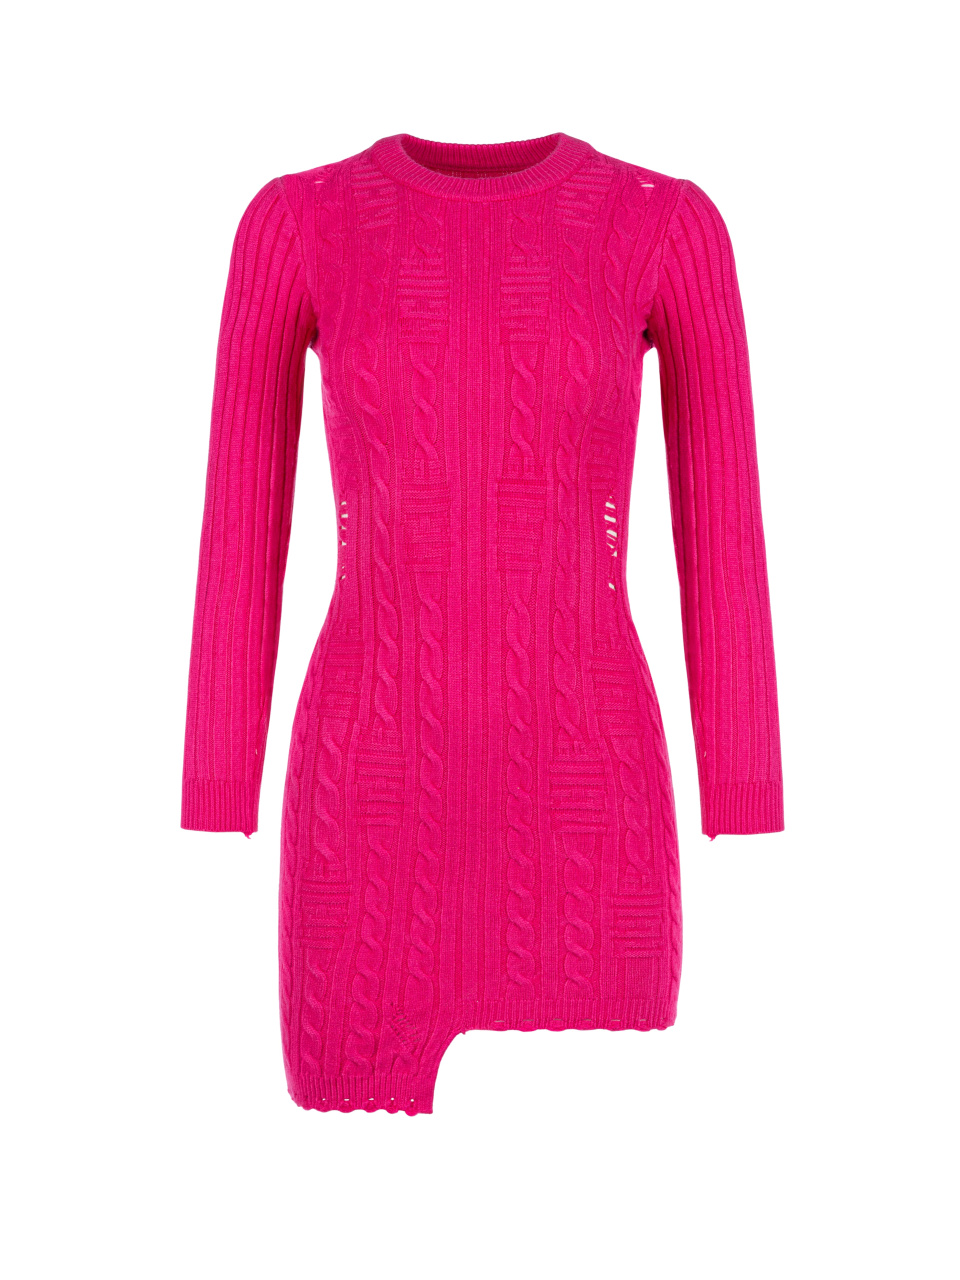 Розовое вязаное платье-мини с асимметричным подолом, 1